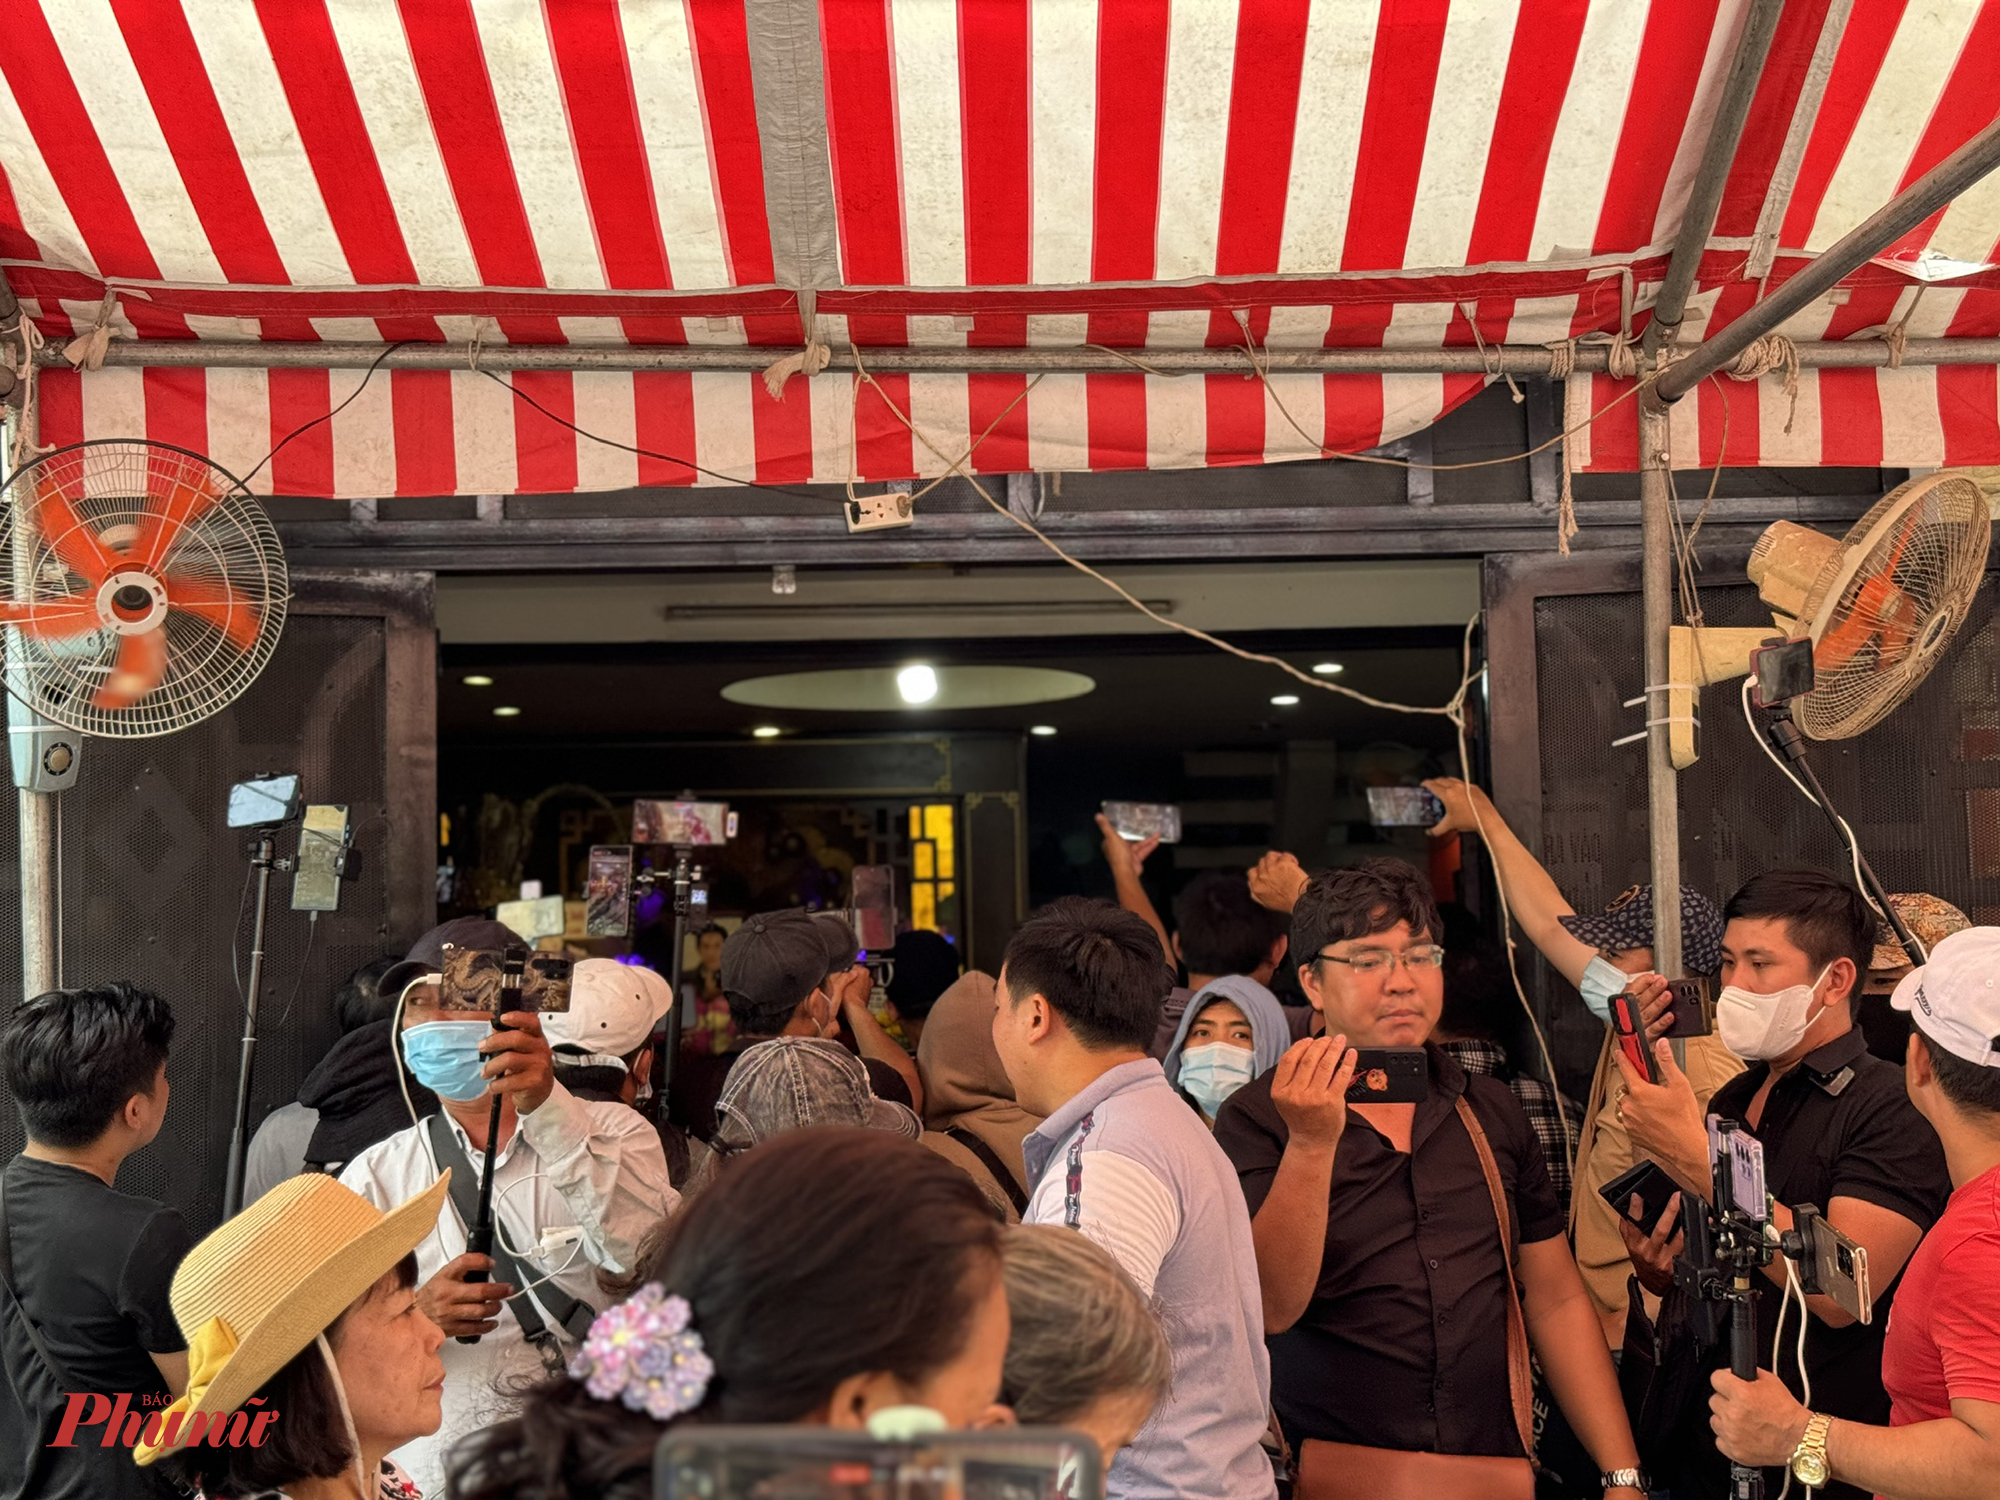 Đám đông quay hình, livestream vây kín nhà của cố NSƯT Vũ Linh. Chị Hồng Loan mong mọi người giữ trật tự để lễ giỗ diễn ra ấm cúng, chỉn chu. 